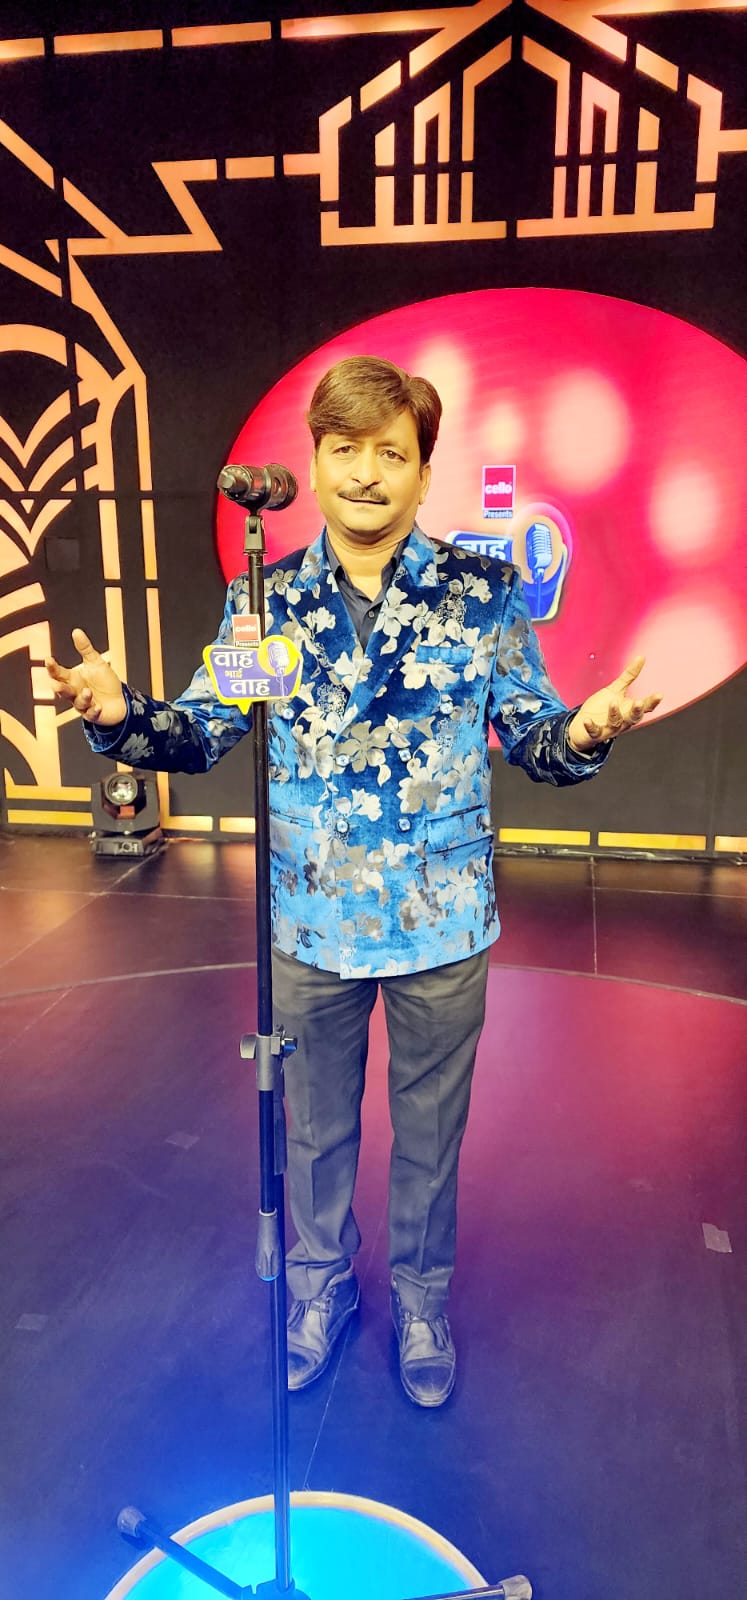 नववर्ष स्पेशल एपिसोड में कवि अतुल ज्वाला की प्रस्तुति आज शेमारू टीवी पर